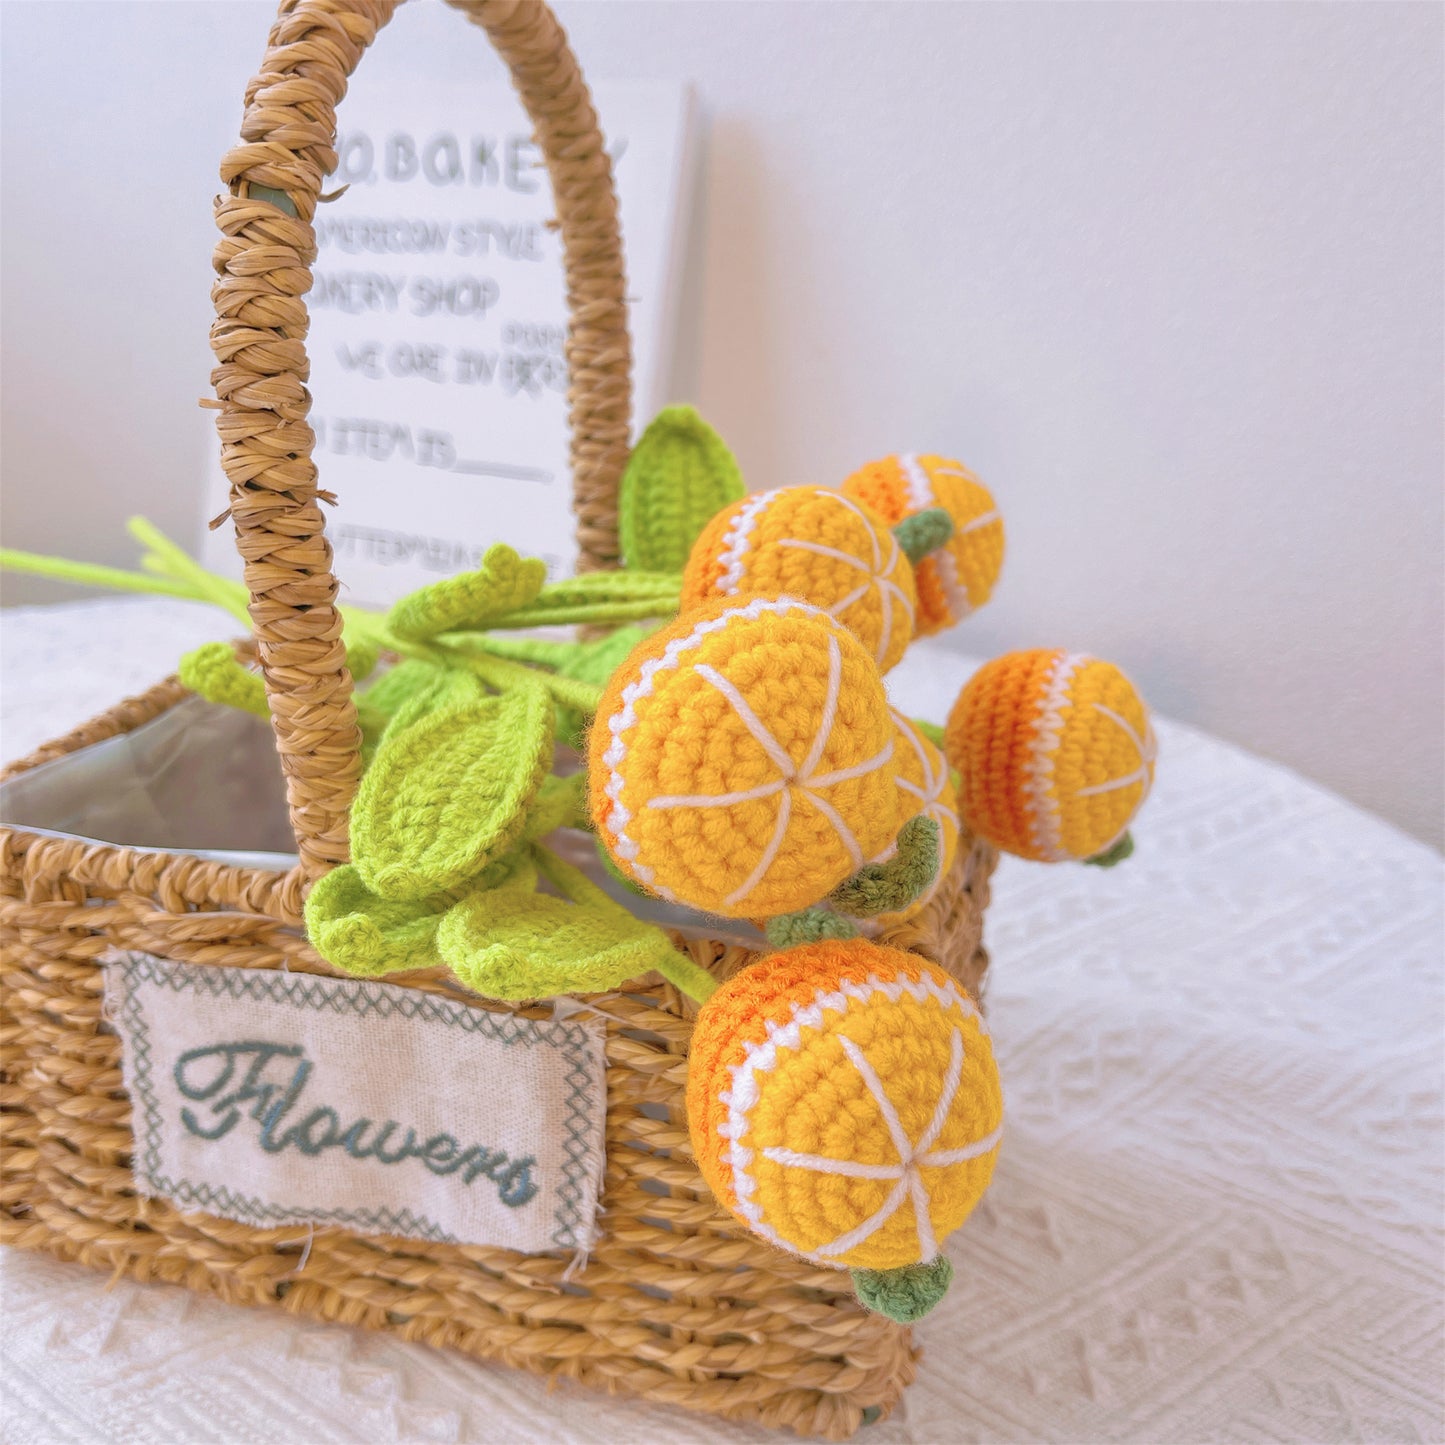 Lebendiger orangefarbener Knall: Handgefertigter gehäkelter orangefarbener Pfahl für eine fröhliche Gartendekoration und ein bedeutungsvolles Geschenk